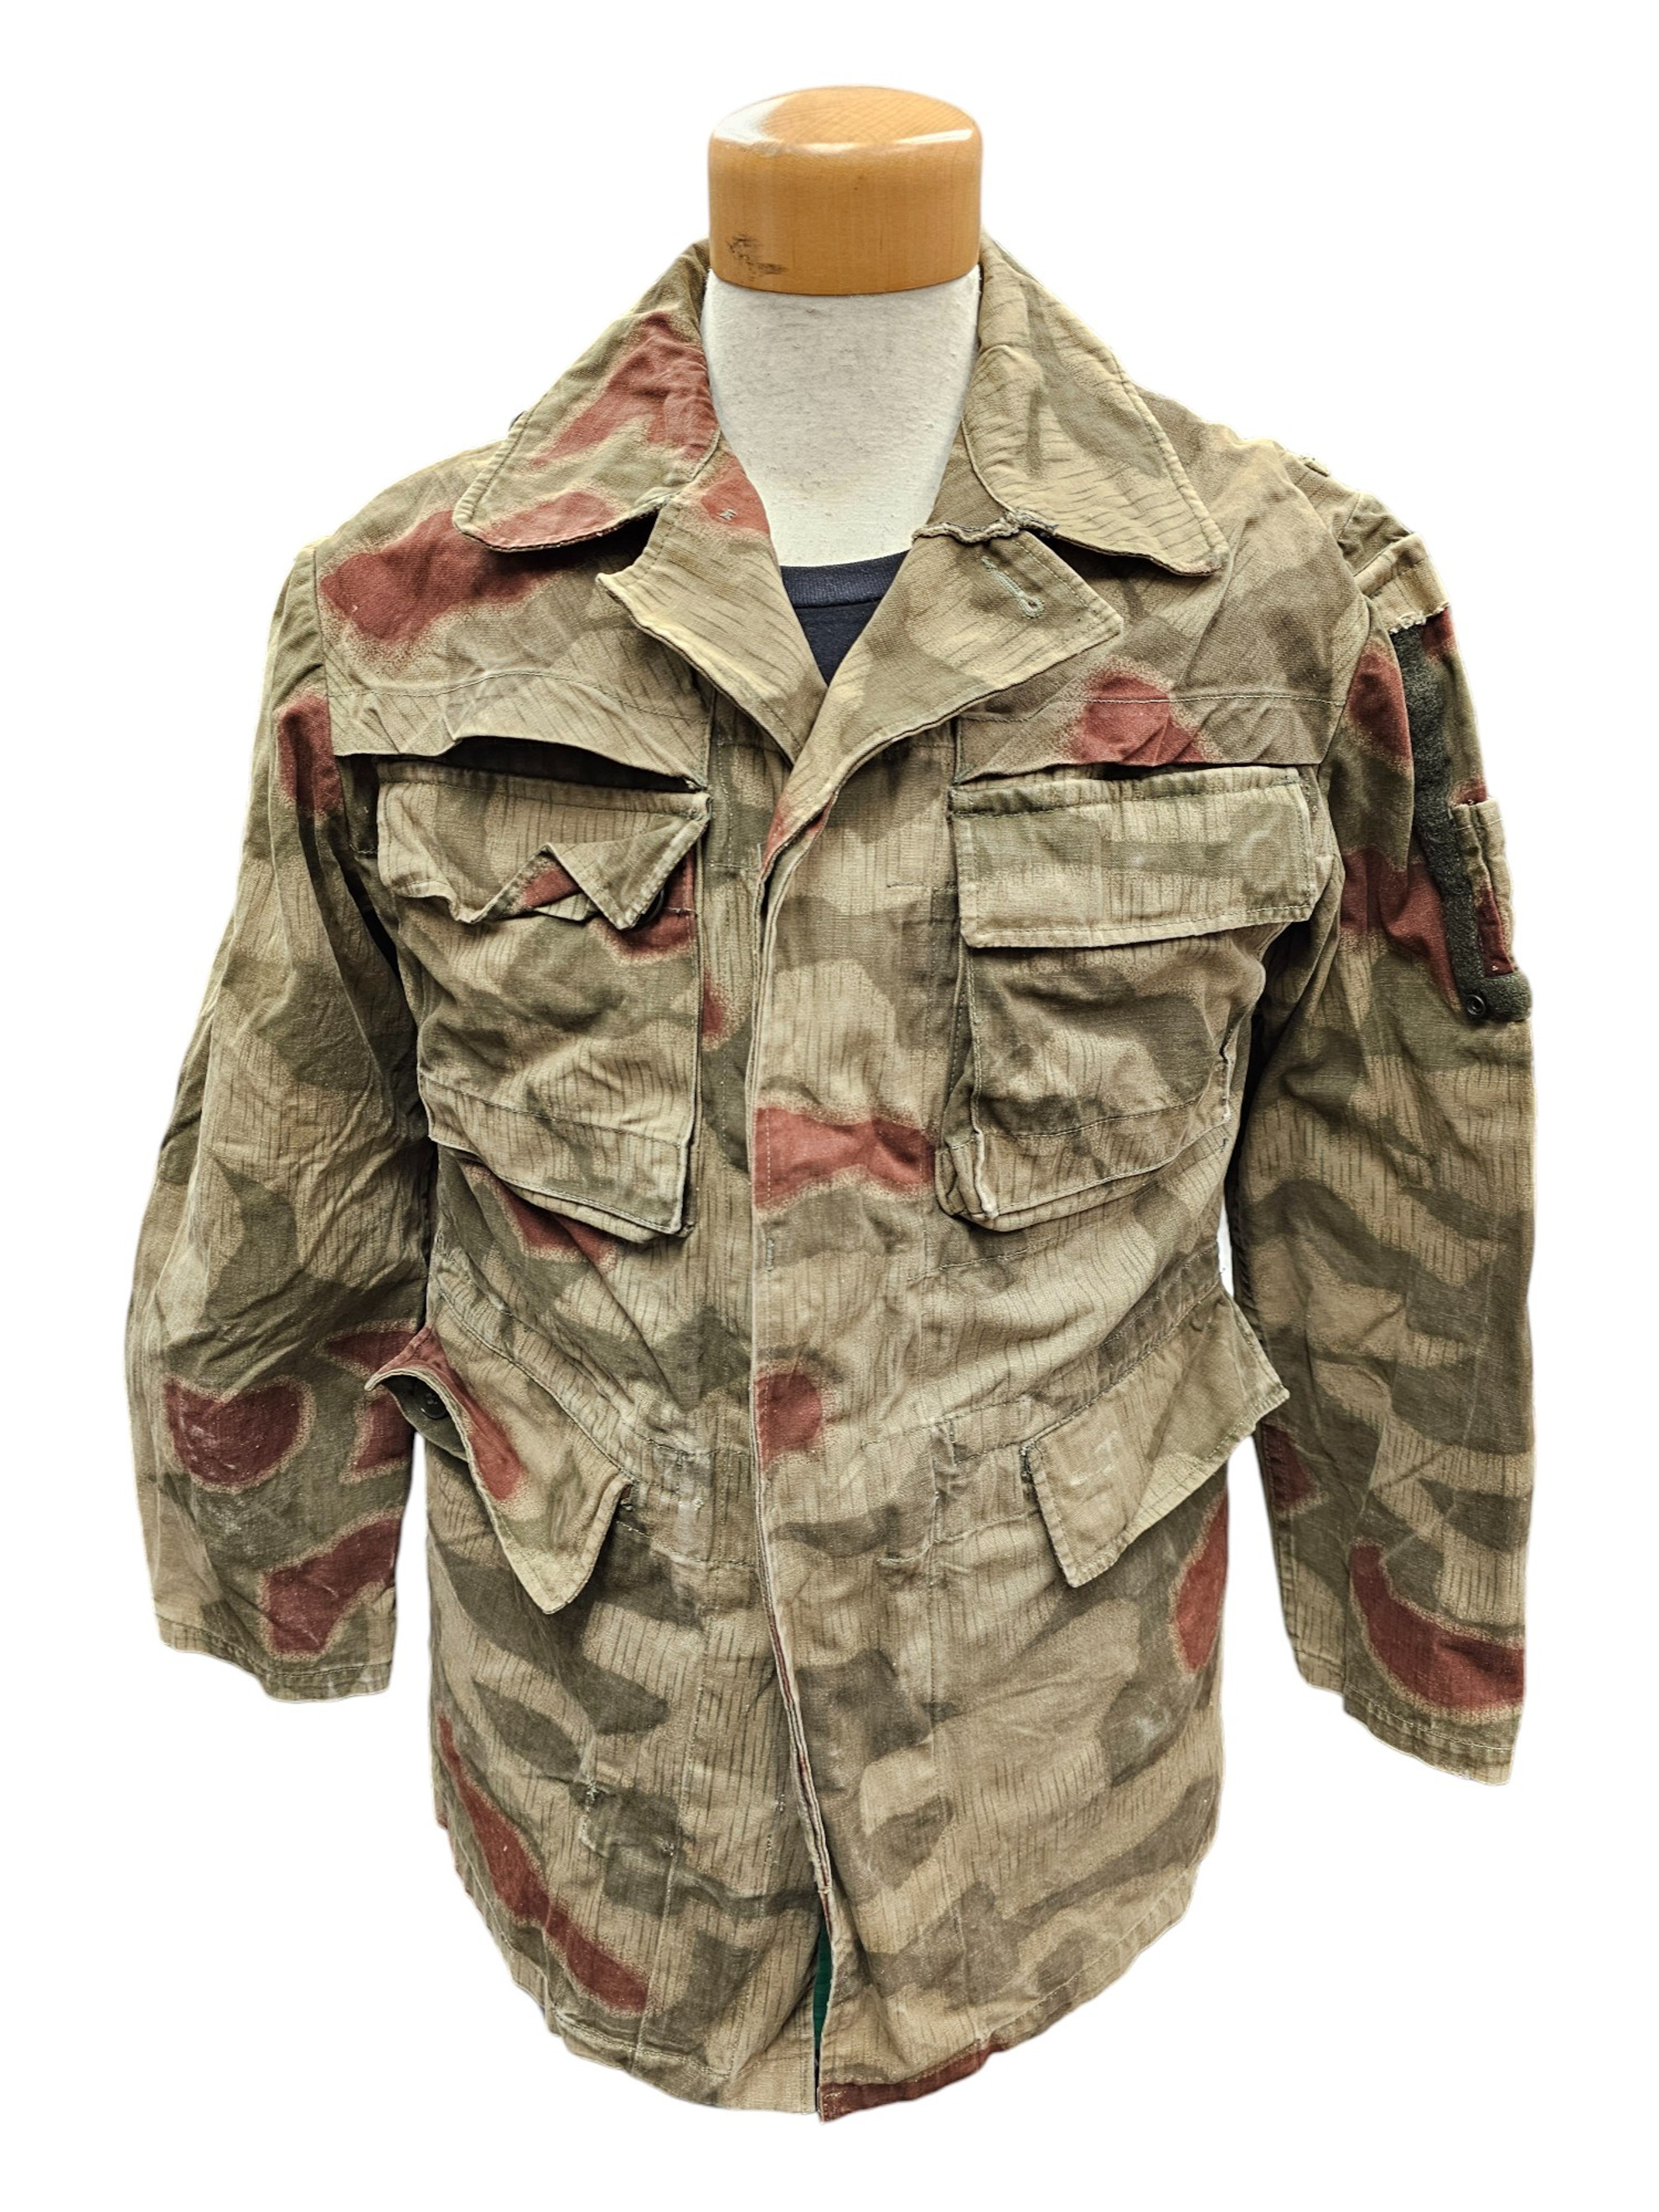 West German Bundesgrenzschutz (BGS) Splinter Camouflage Jacket